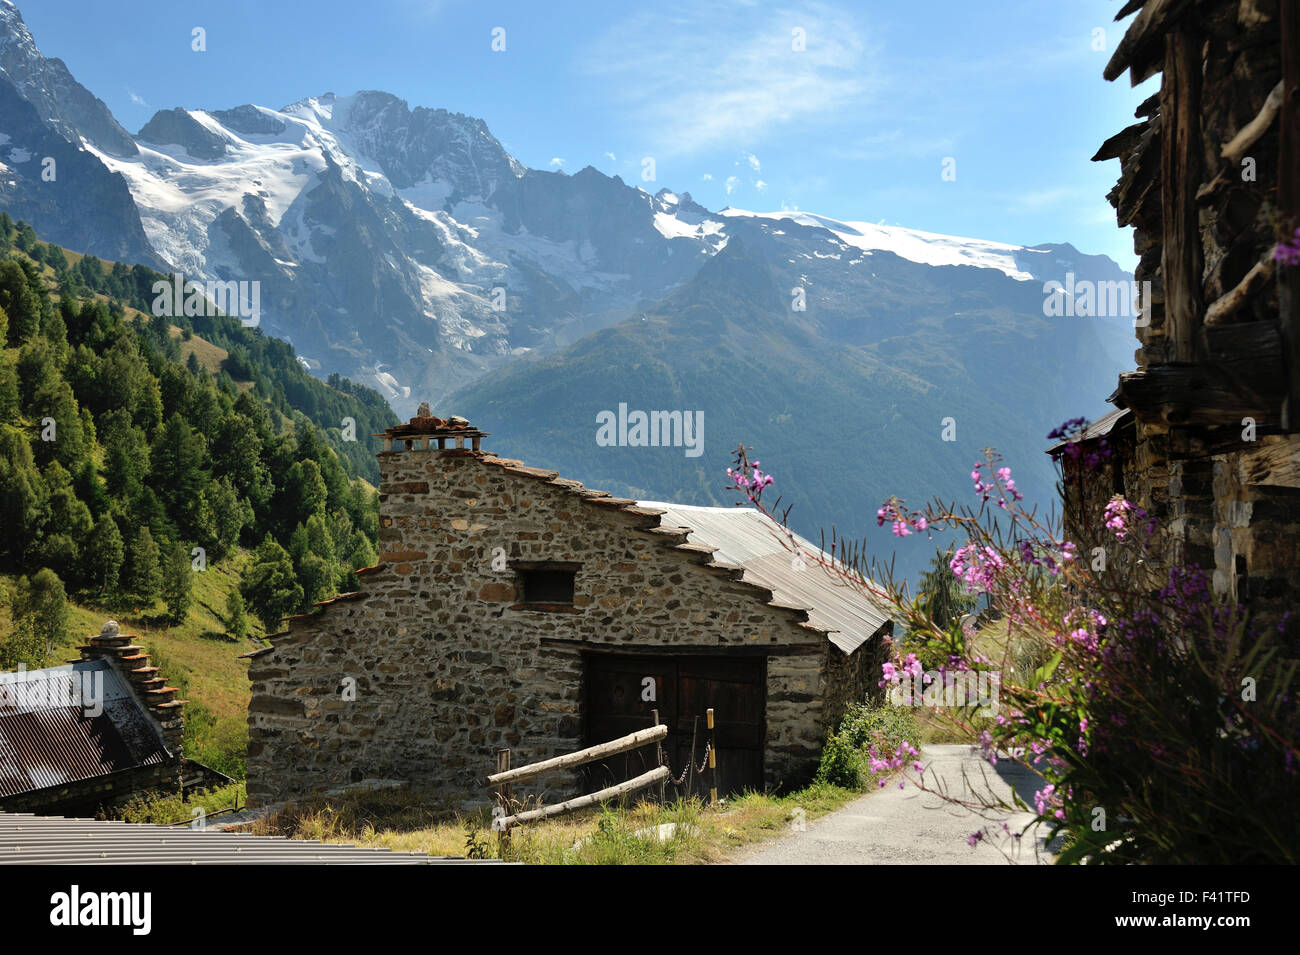 Maisons de pierre et de bois dans le petit hameau entouré par de magnifiques paysages de montagne dans la région de Valfroide, Alpes, France Banque D'Images